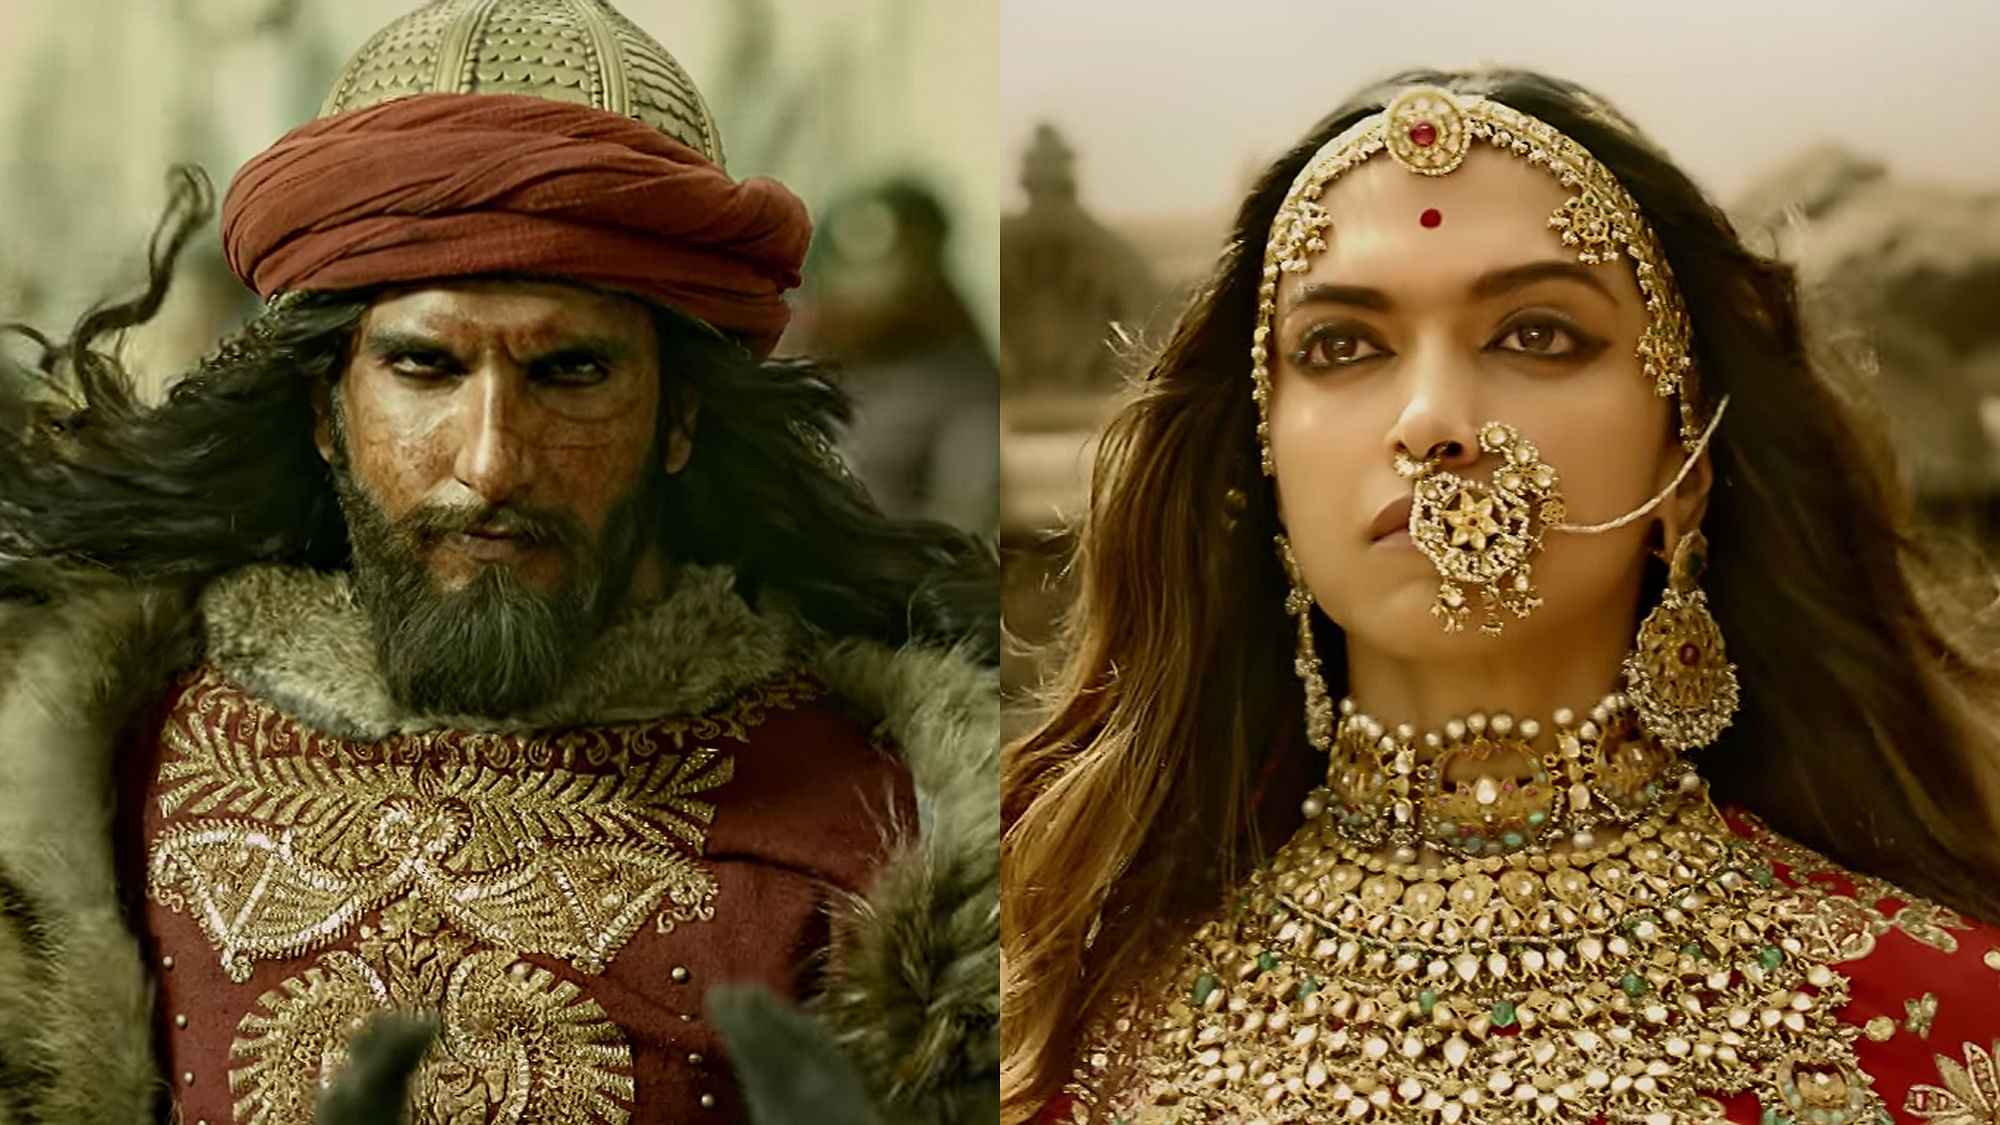 Ranveer Singh as Alauddin Khilji and Deepika Padukone as Padmavati in the movie <i>Padmavati</i>.